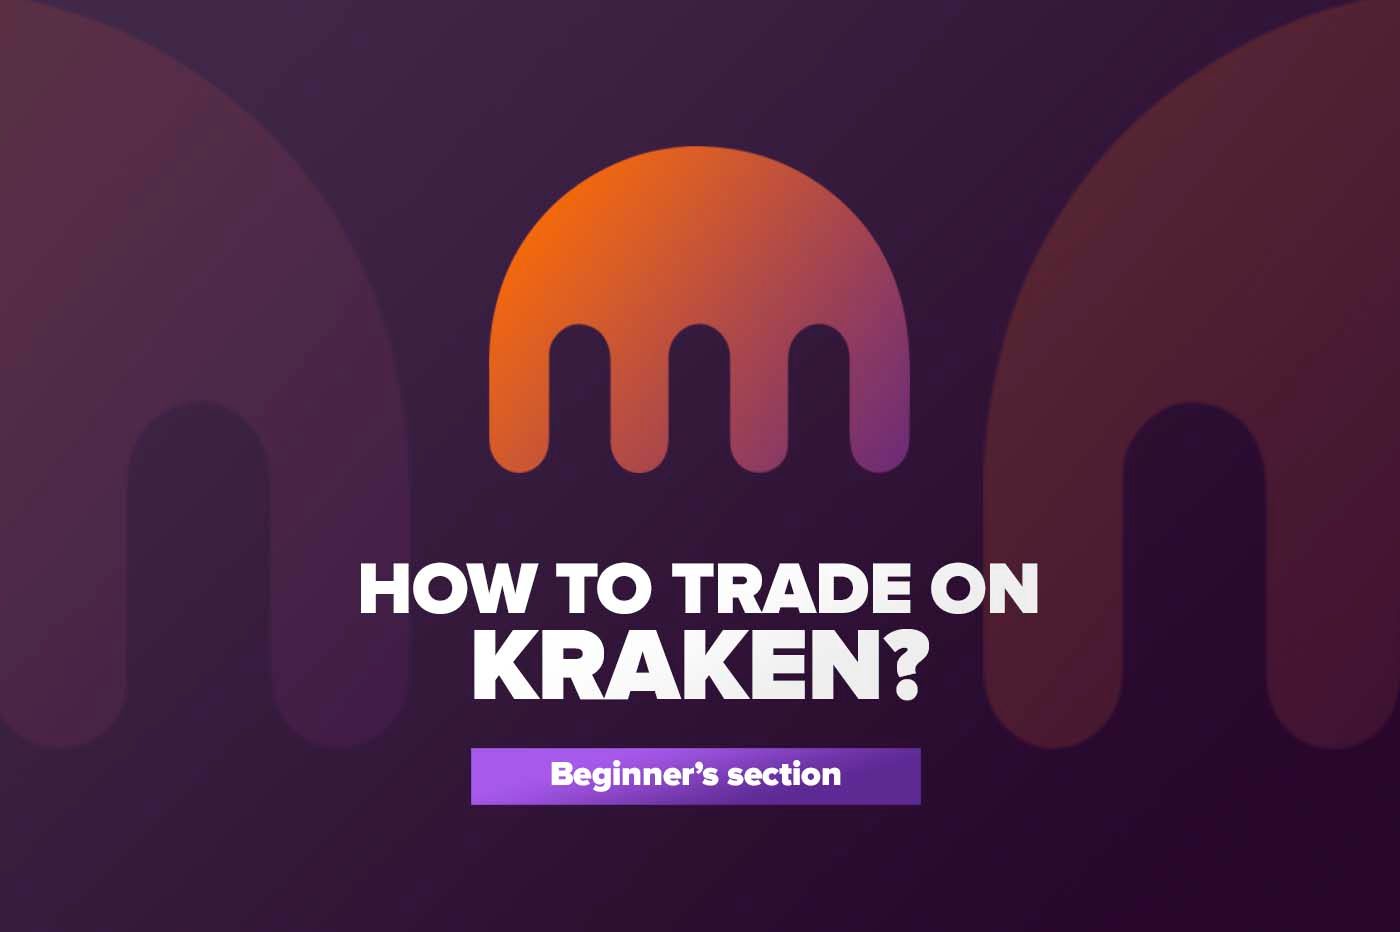 Article Как торговать на Kraken?